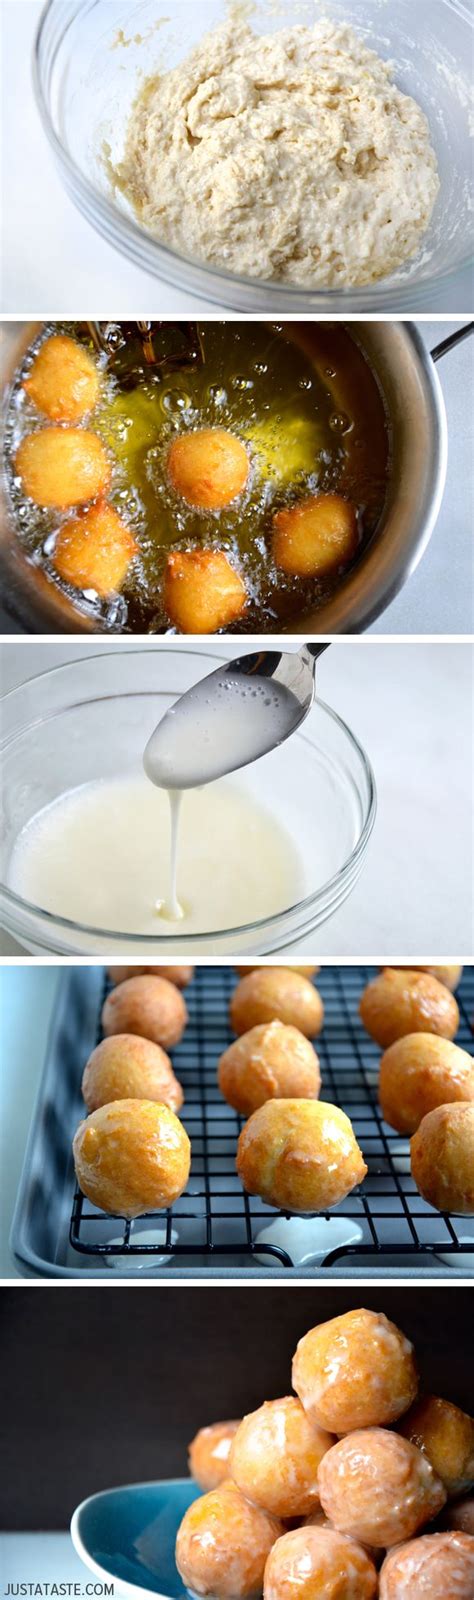 Easy Homemade Glazed Doughnut Holes Recipe Just A Taste Recipes